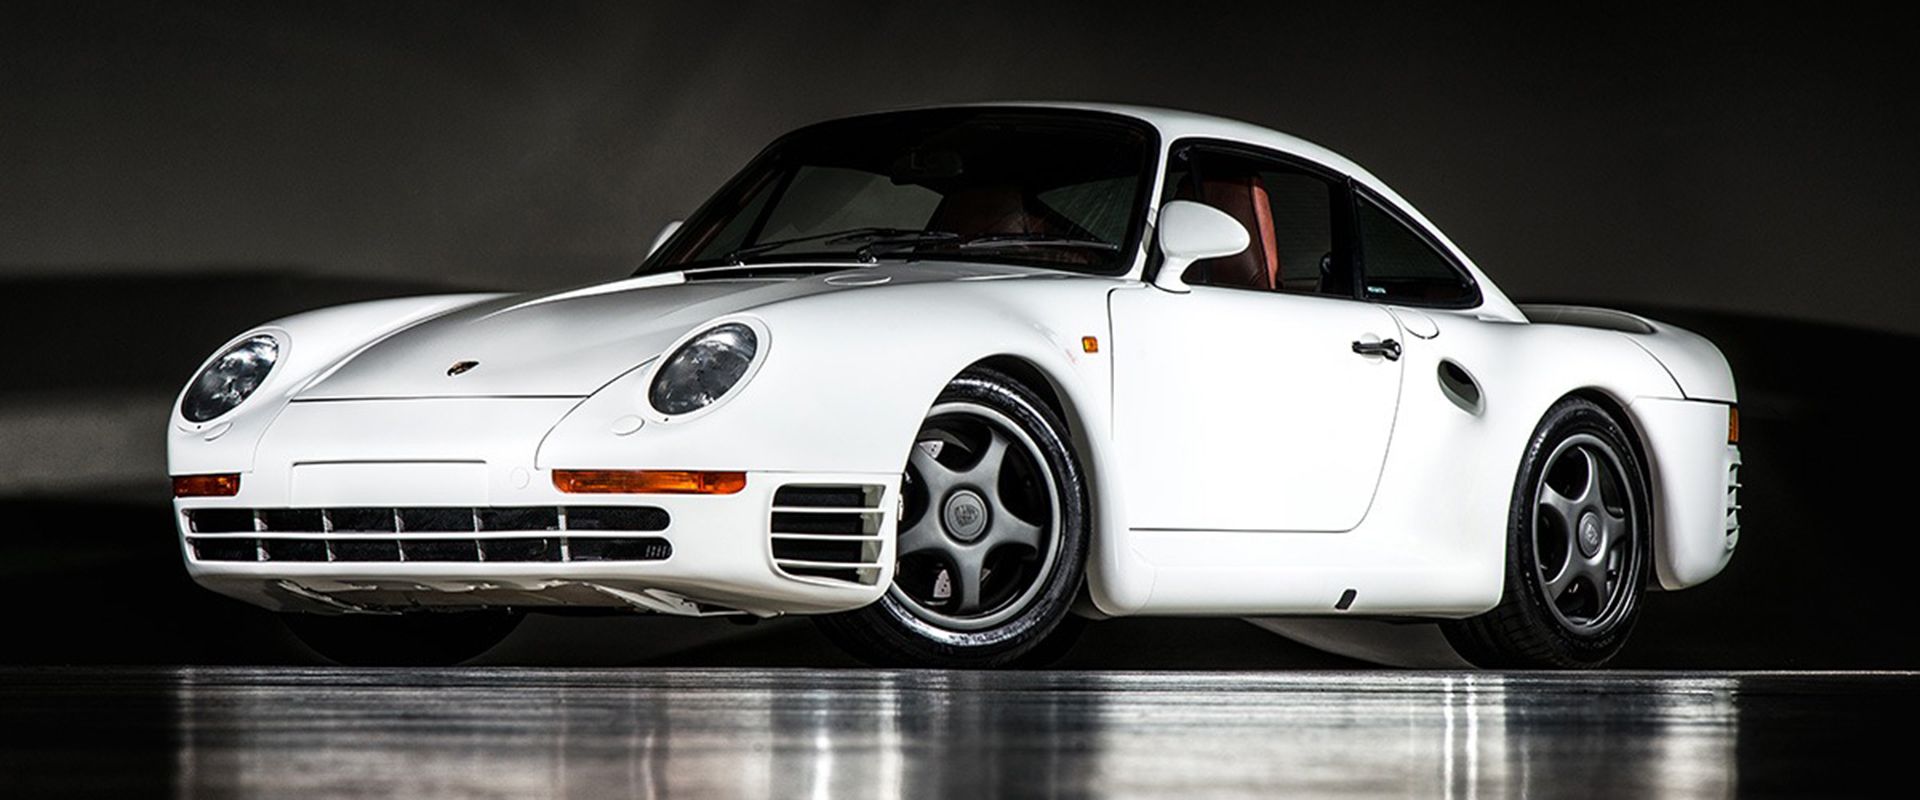 نمای کناری خودروی Porsche 959 Sport به رنگ سفید که انعکاس آن روی زمین دیده می شود